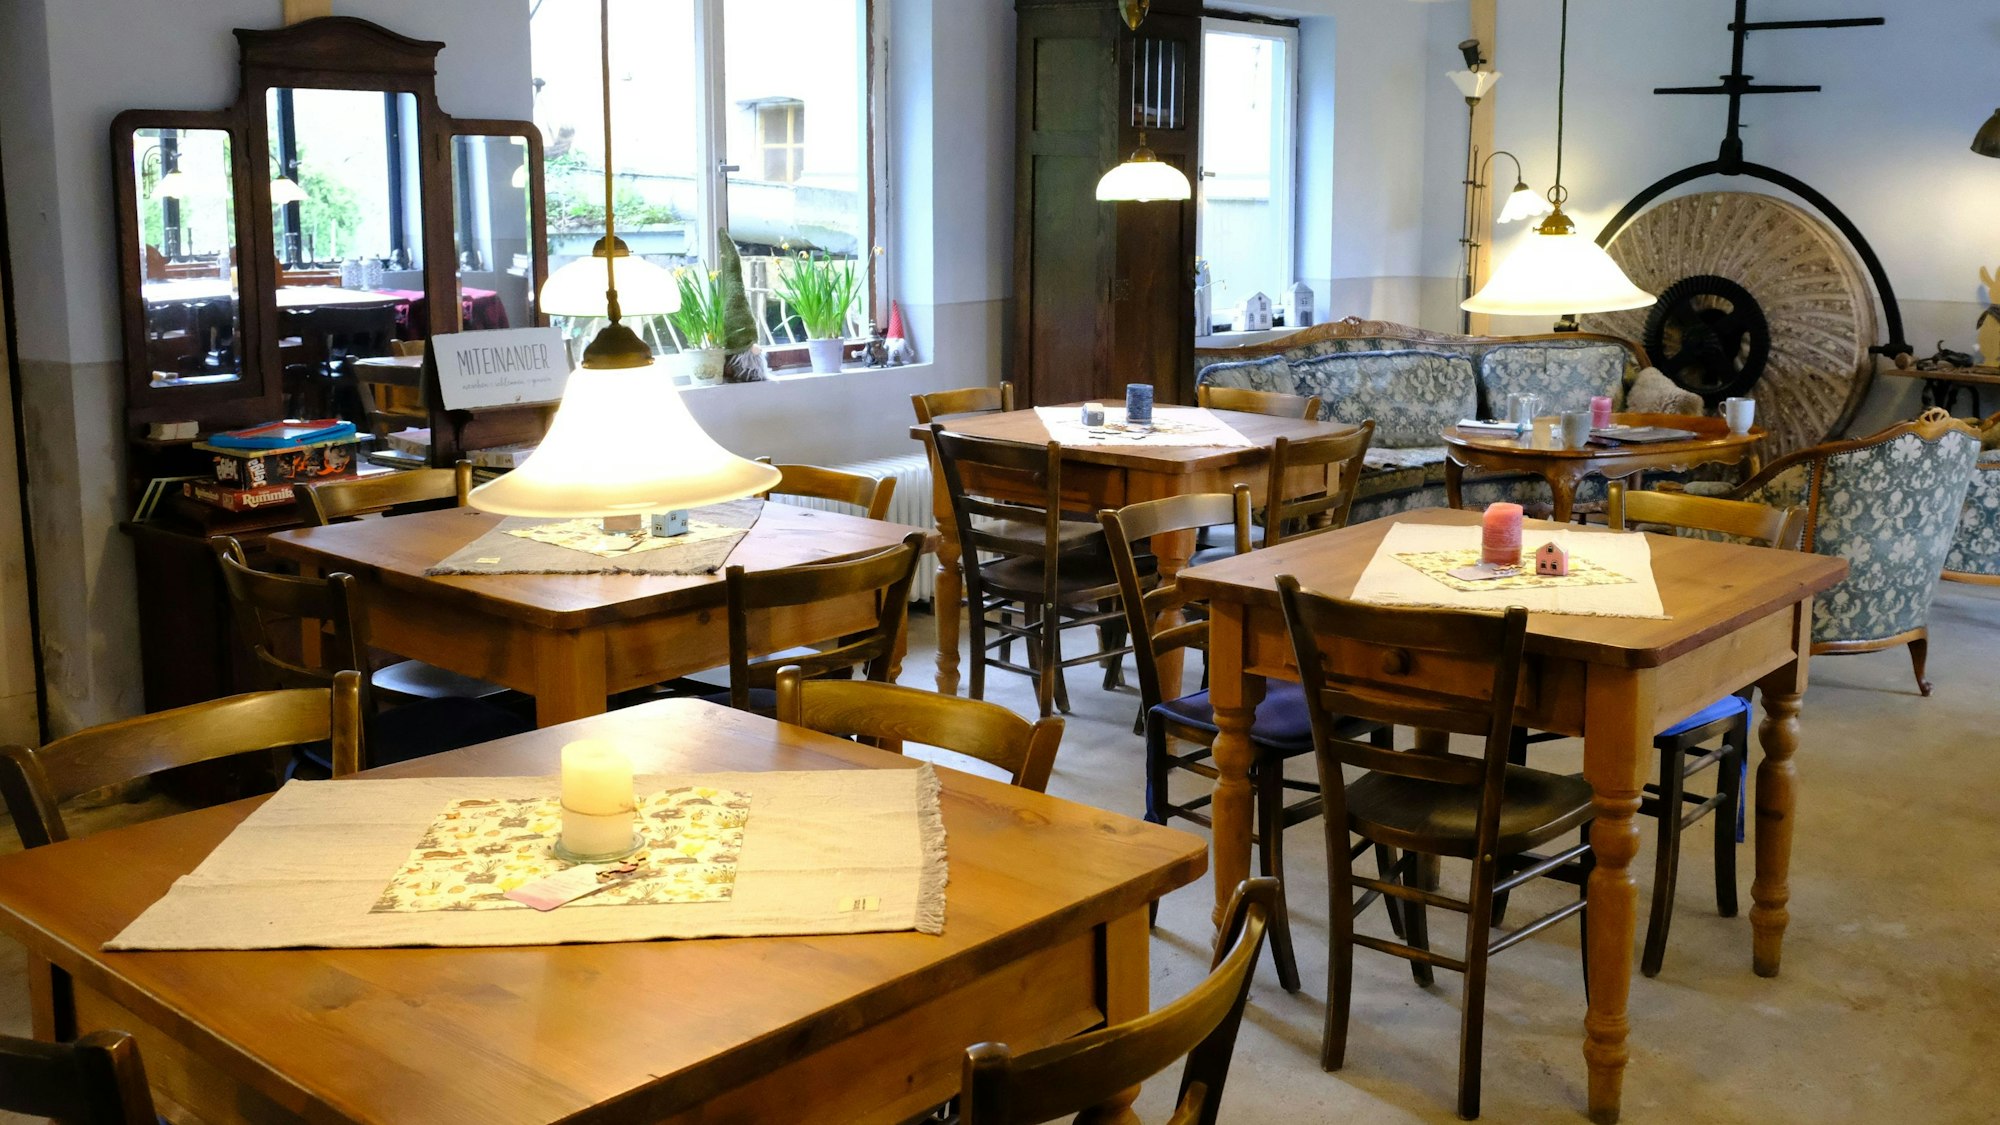 Blick in den mit alten Lampen und Möbeln ausgestatteten Gastraum des Cafés in der Hauserbachmühle.